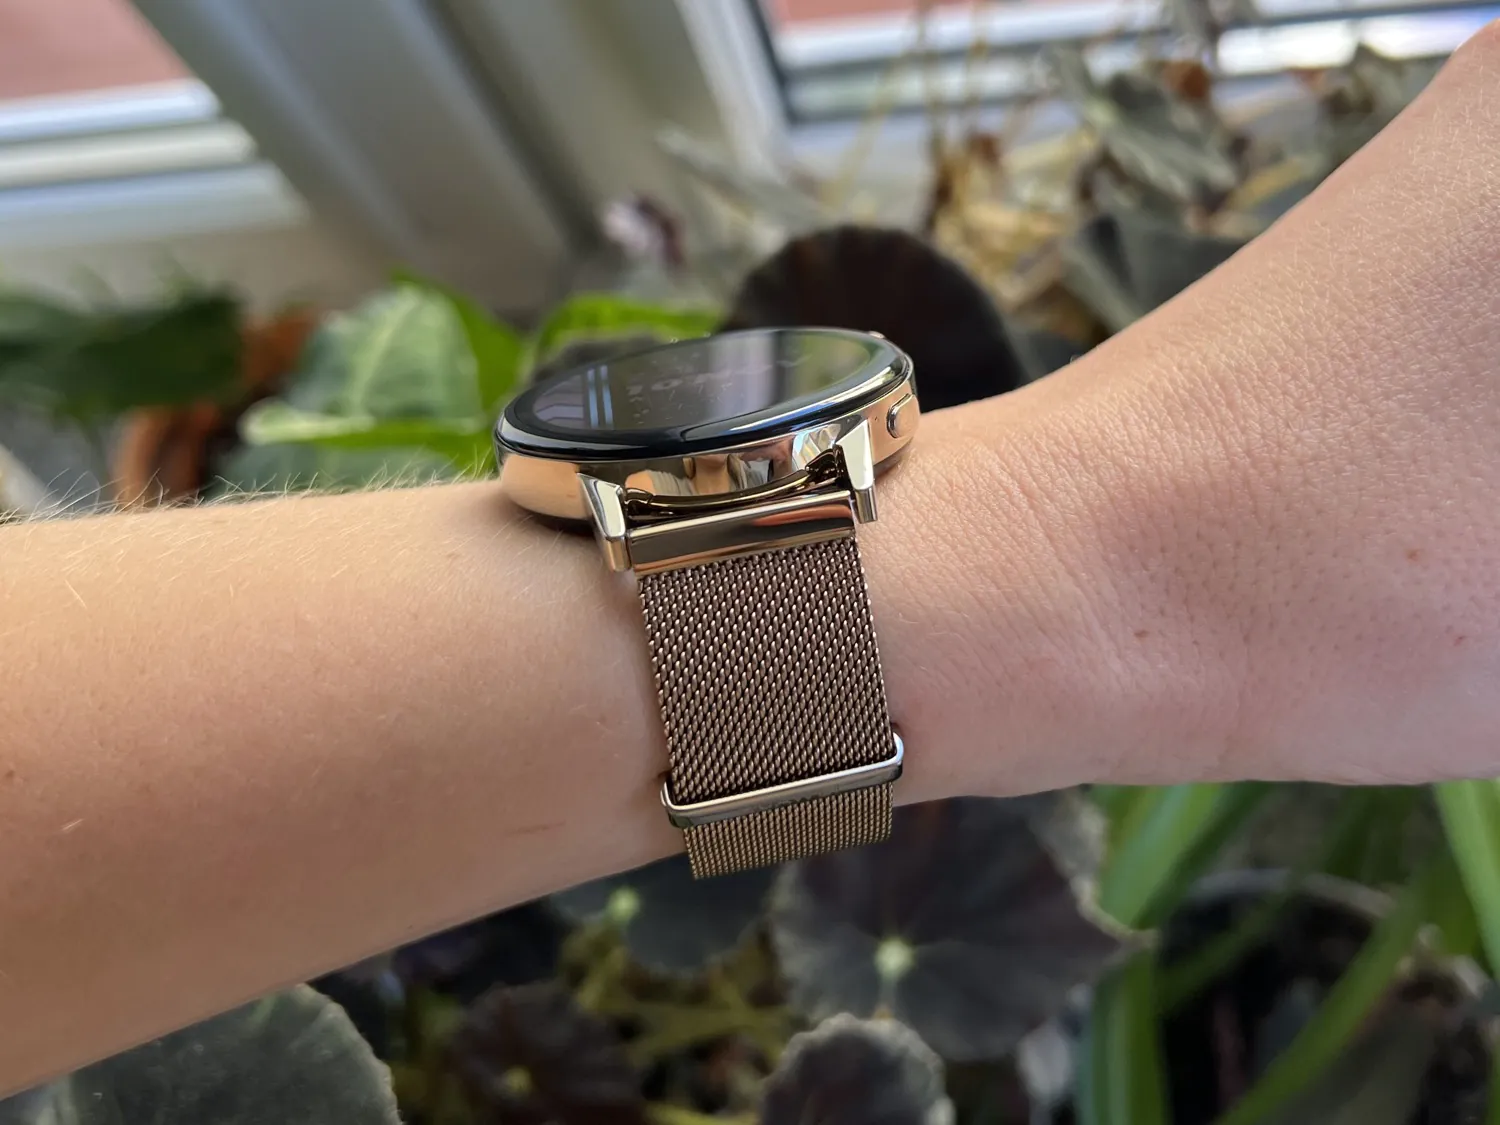 Huawei Watch GT3 42mm